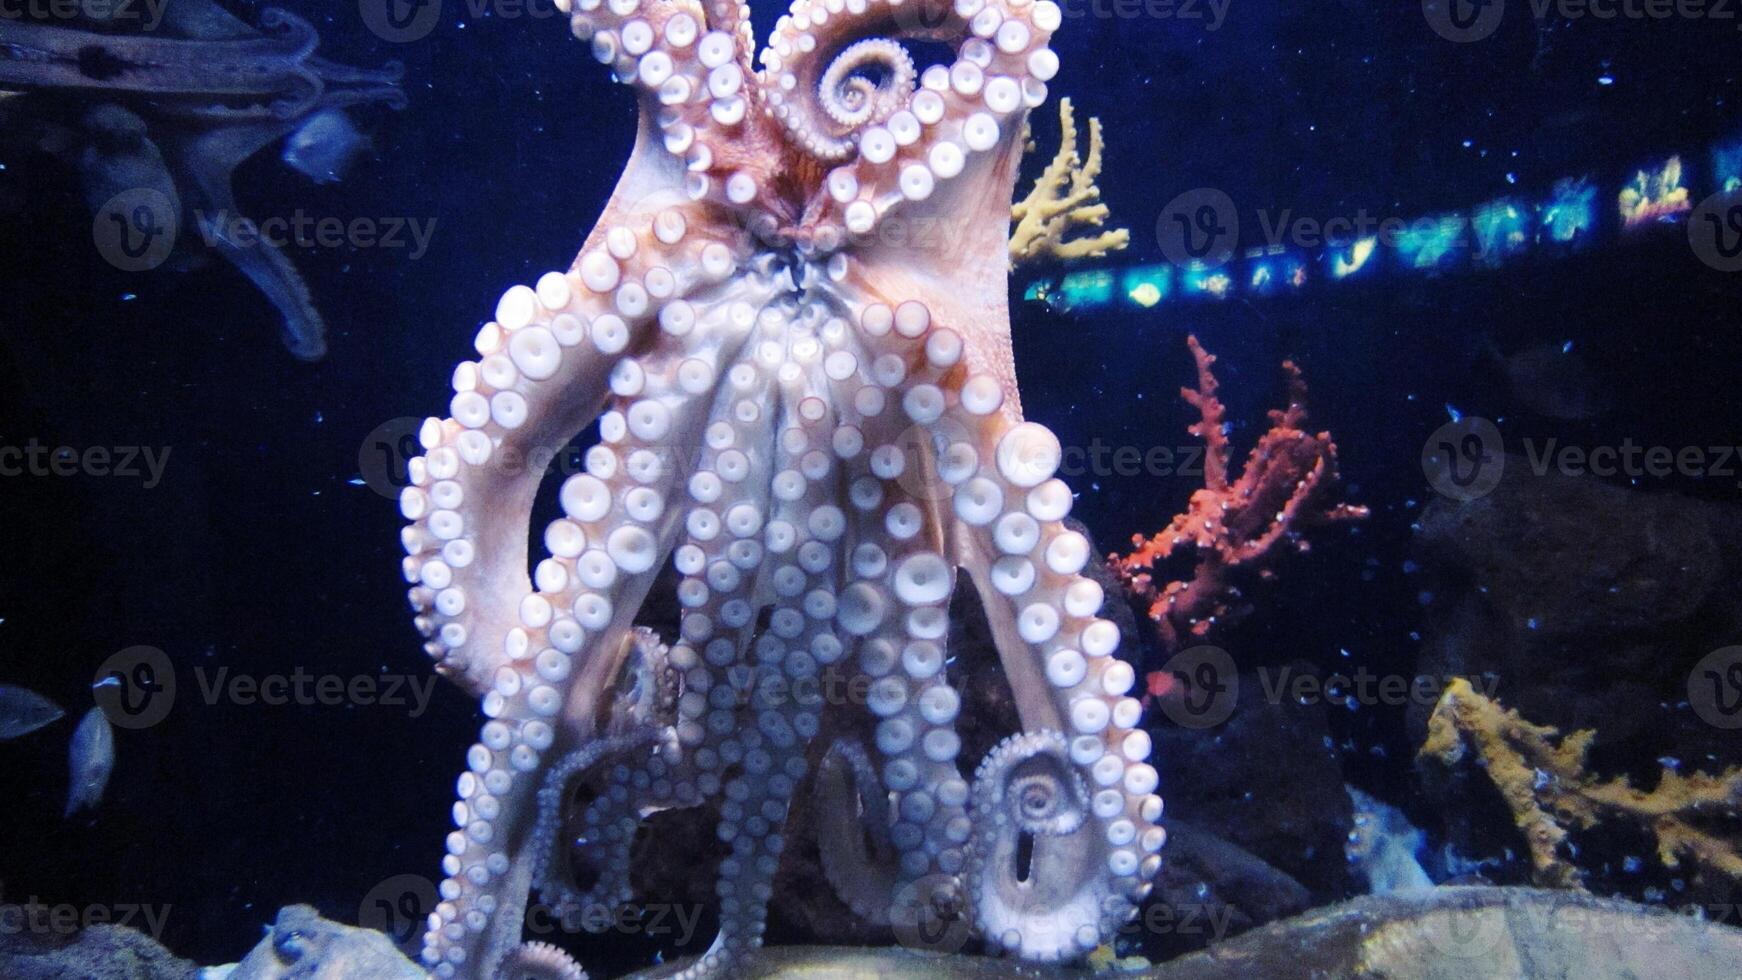 detailopname visie van een gemeenschappelijk Octopus vulgaris zwemmen onderwater, macro portret onder water foto